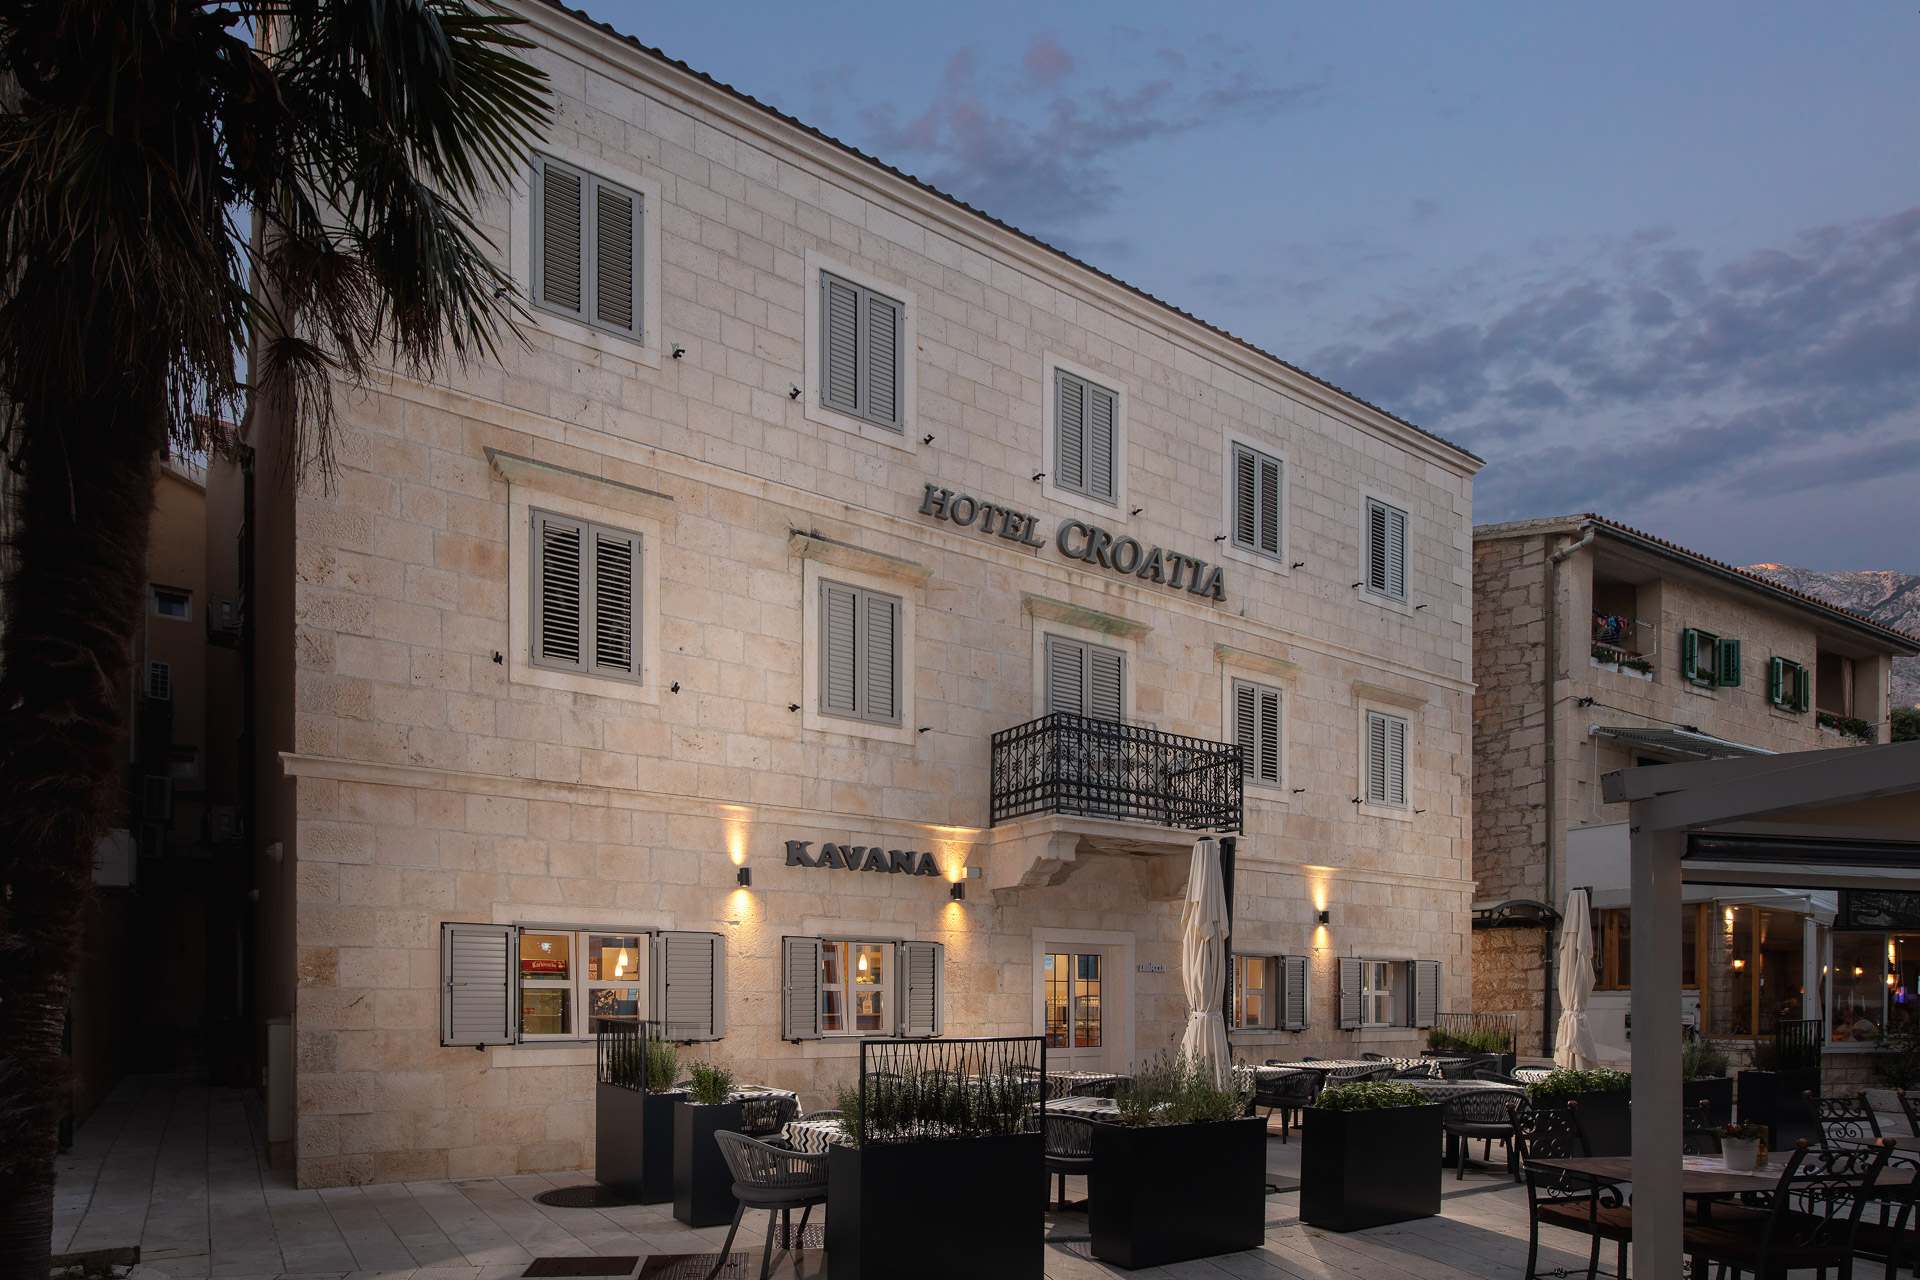 Hotel Croatia in Baska Voda